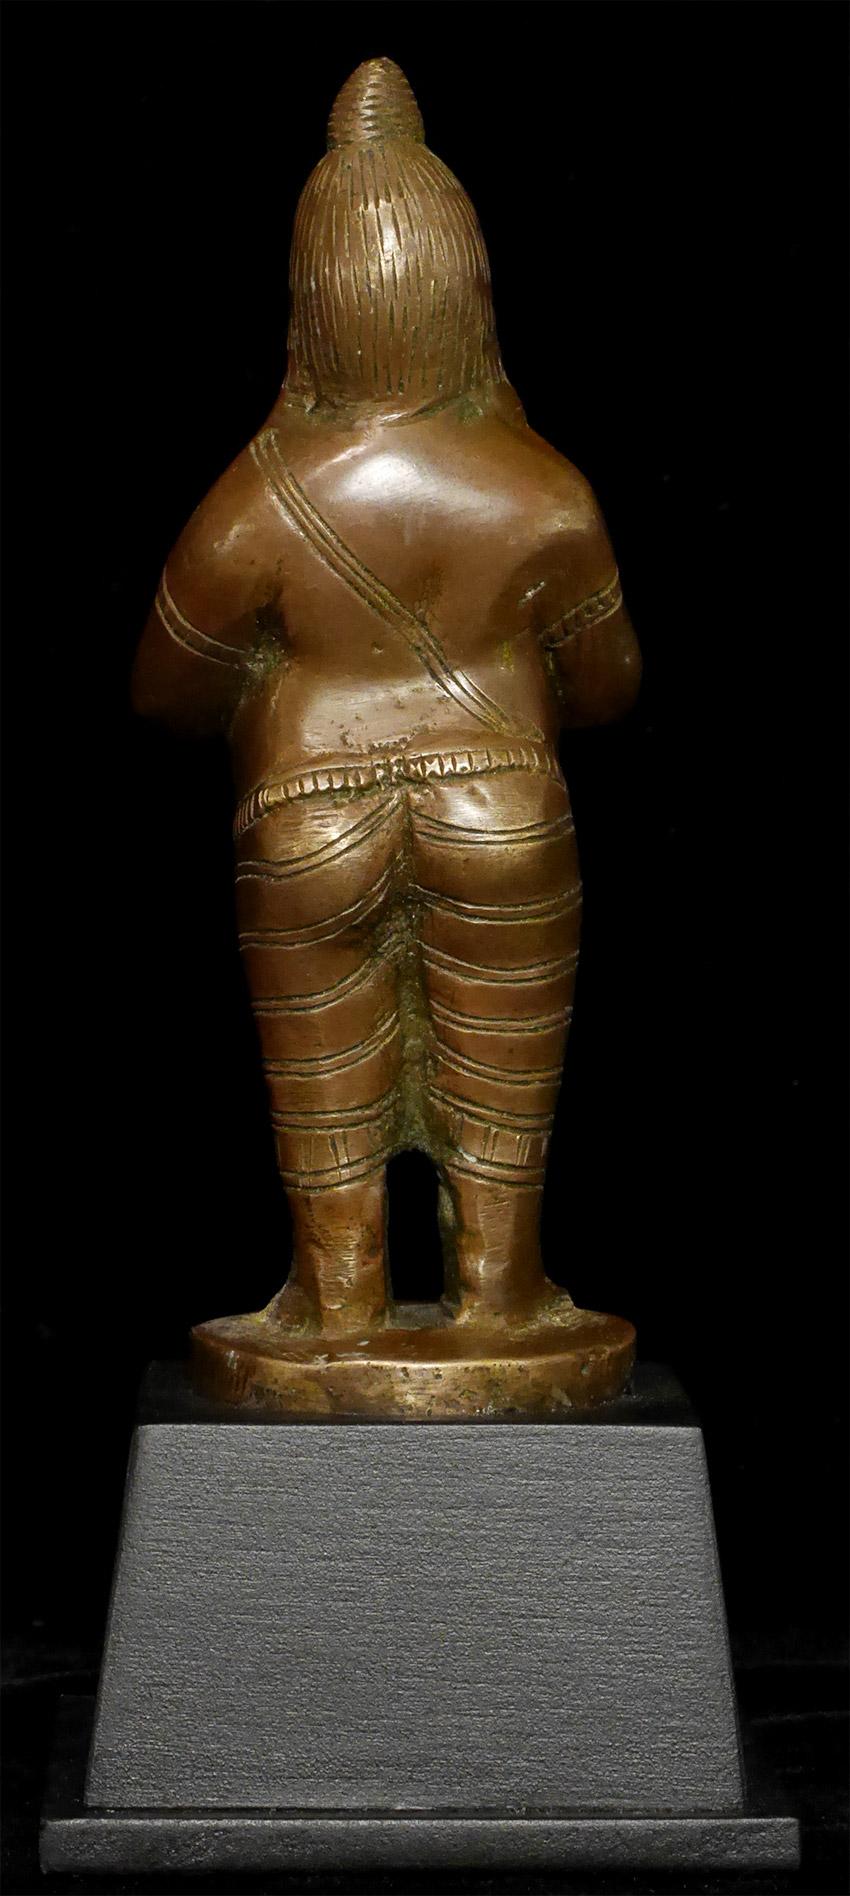 Moulage Yogi indien ancien, sculpture hindoue unique en bronze massif coulé - 7816 en vente